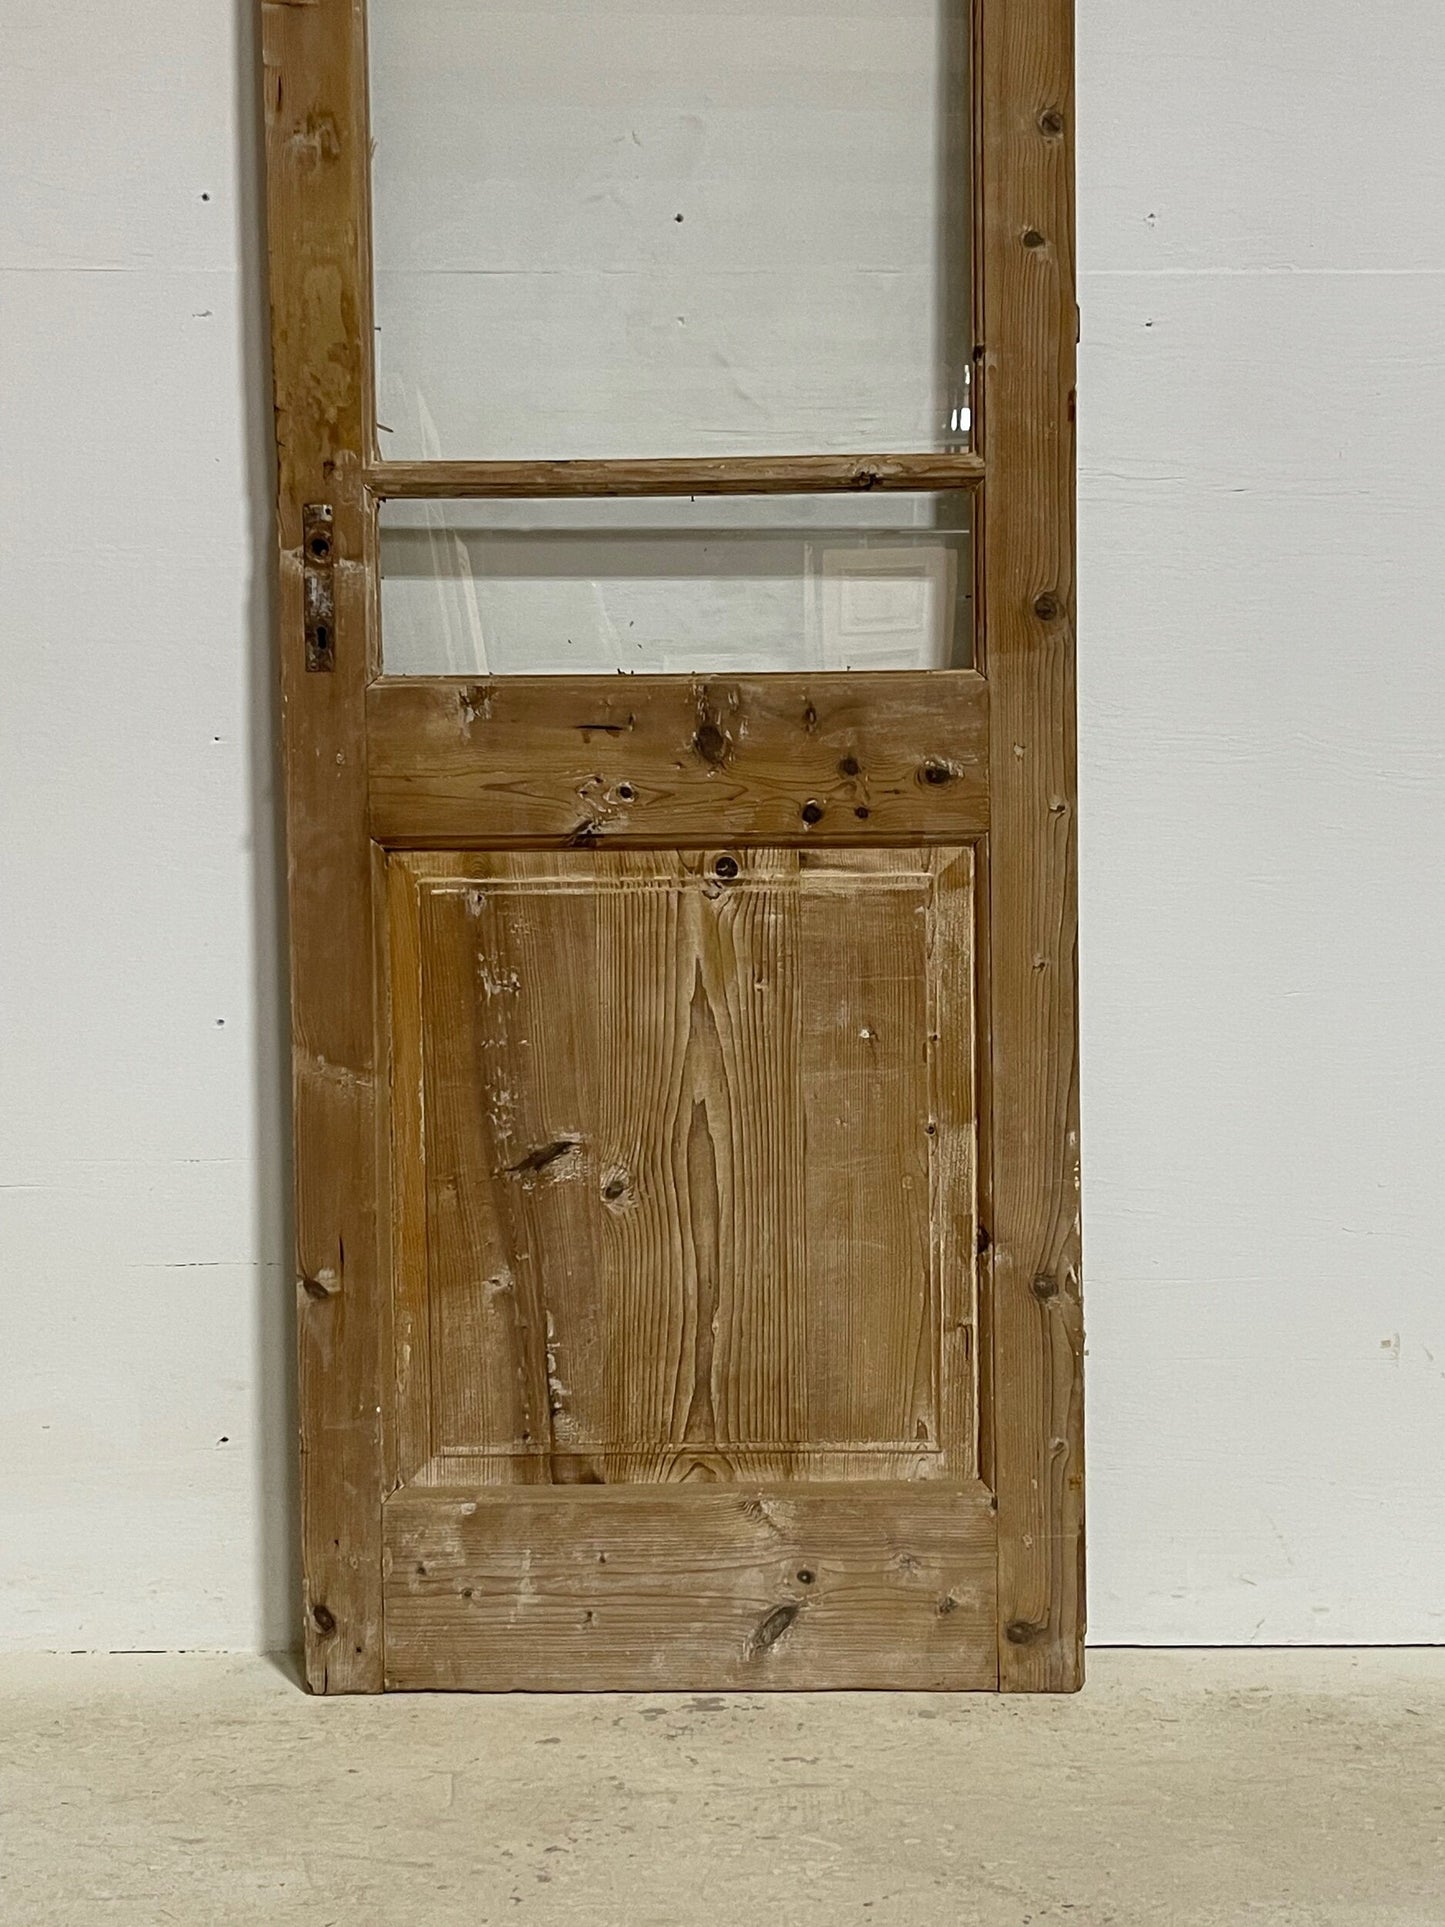 Antique French panel door (87.5x26.5) G1419s